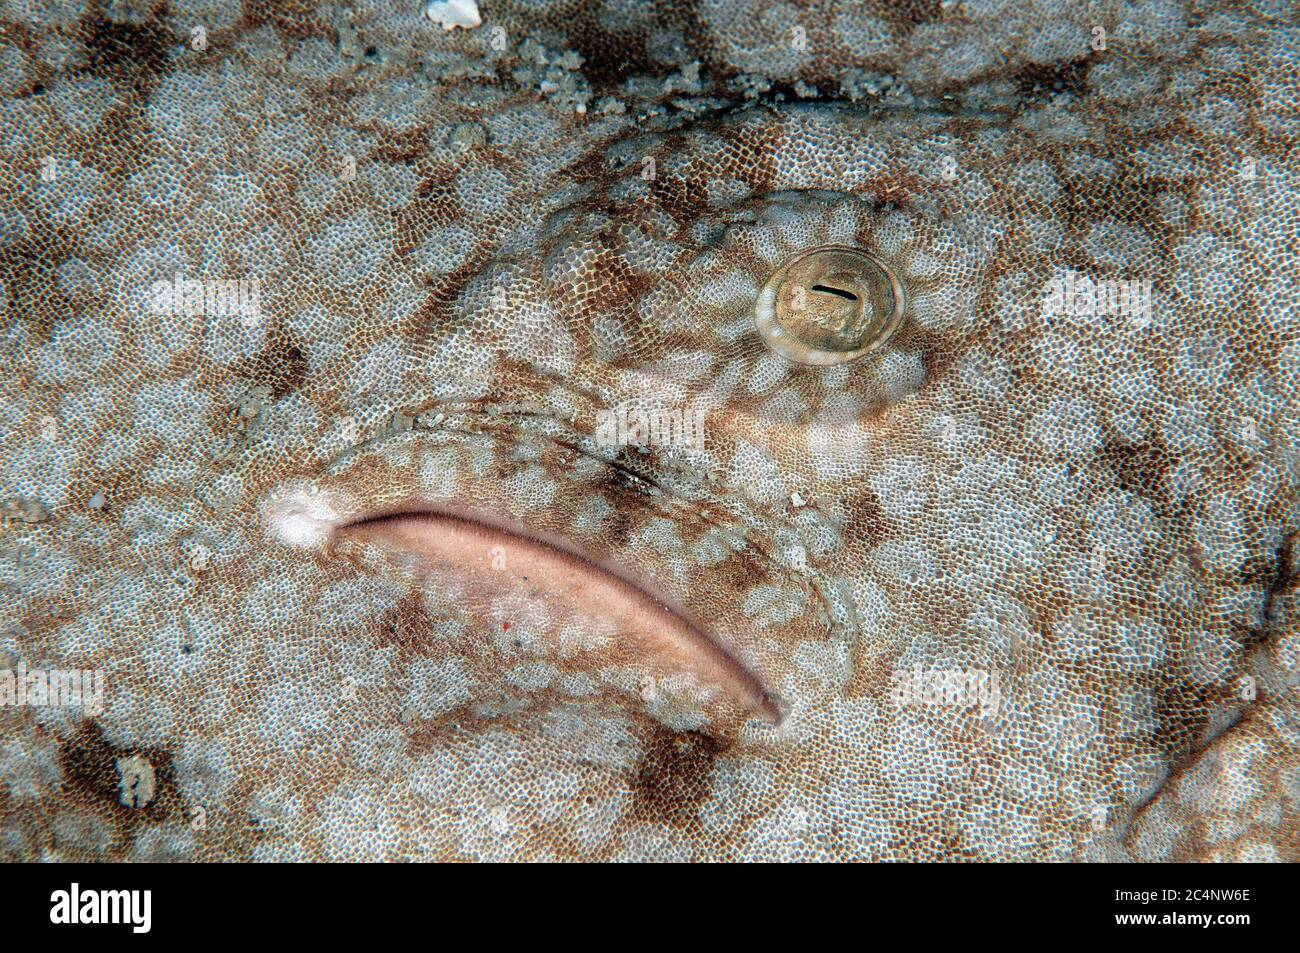 Occhio e spiracolo dettaglio di uno squalo di wobbegong tasseled, Eucrossorhinus dasipogon, Heron Island, Grande barriera Corallina, Australia Foto Stock